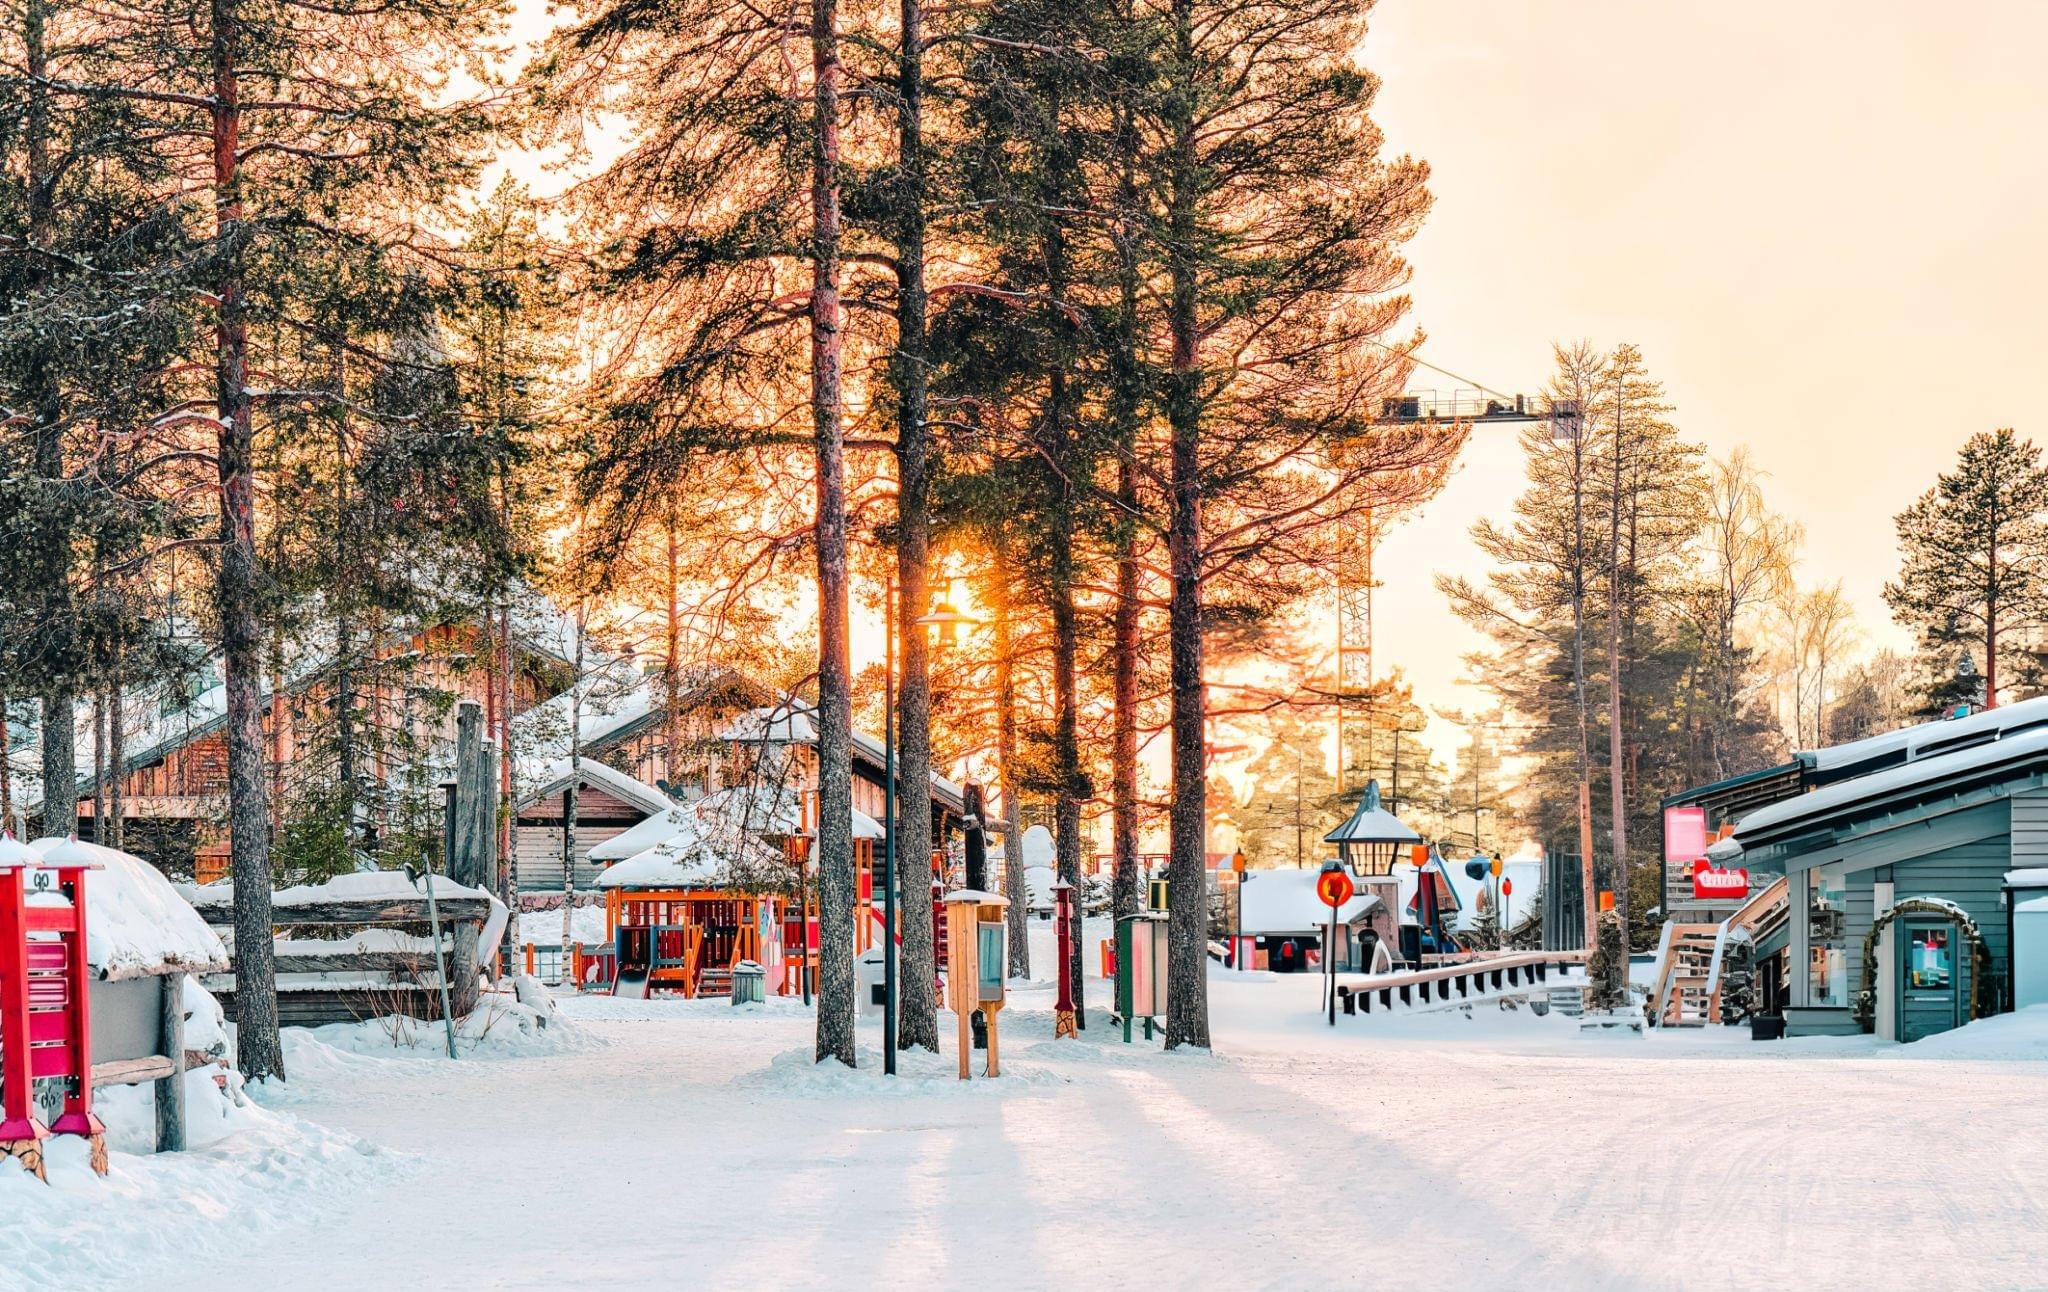 Santa Claus Village, Rovaniemi